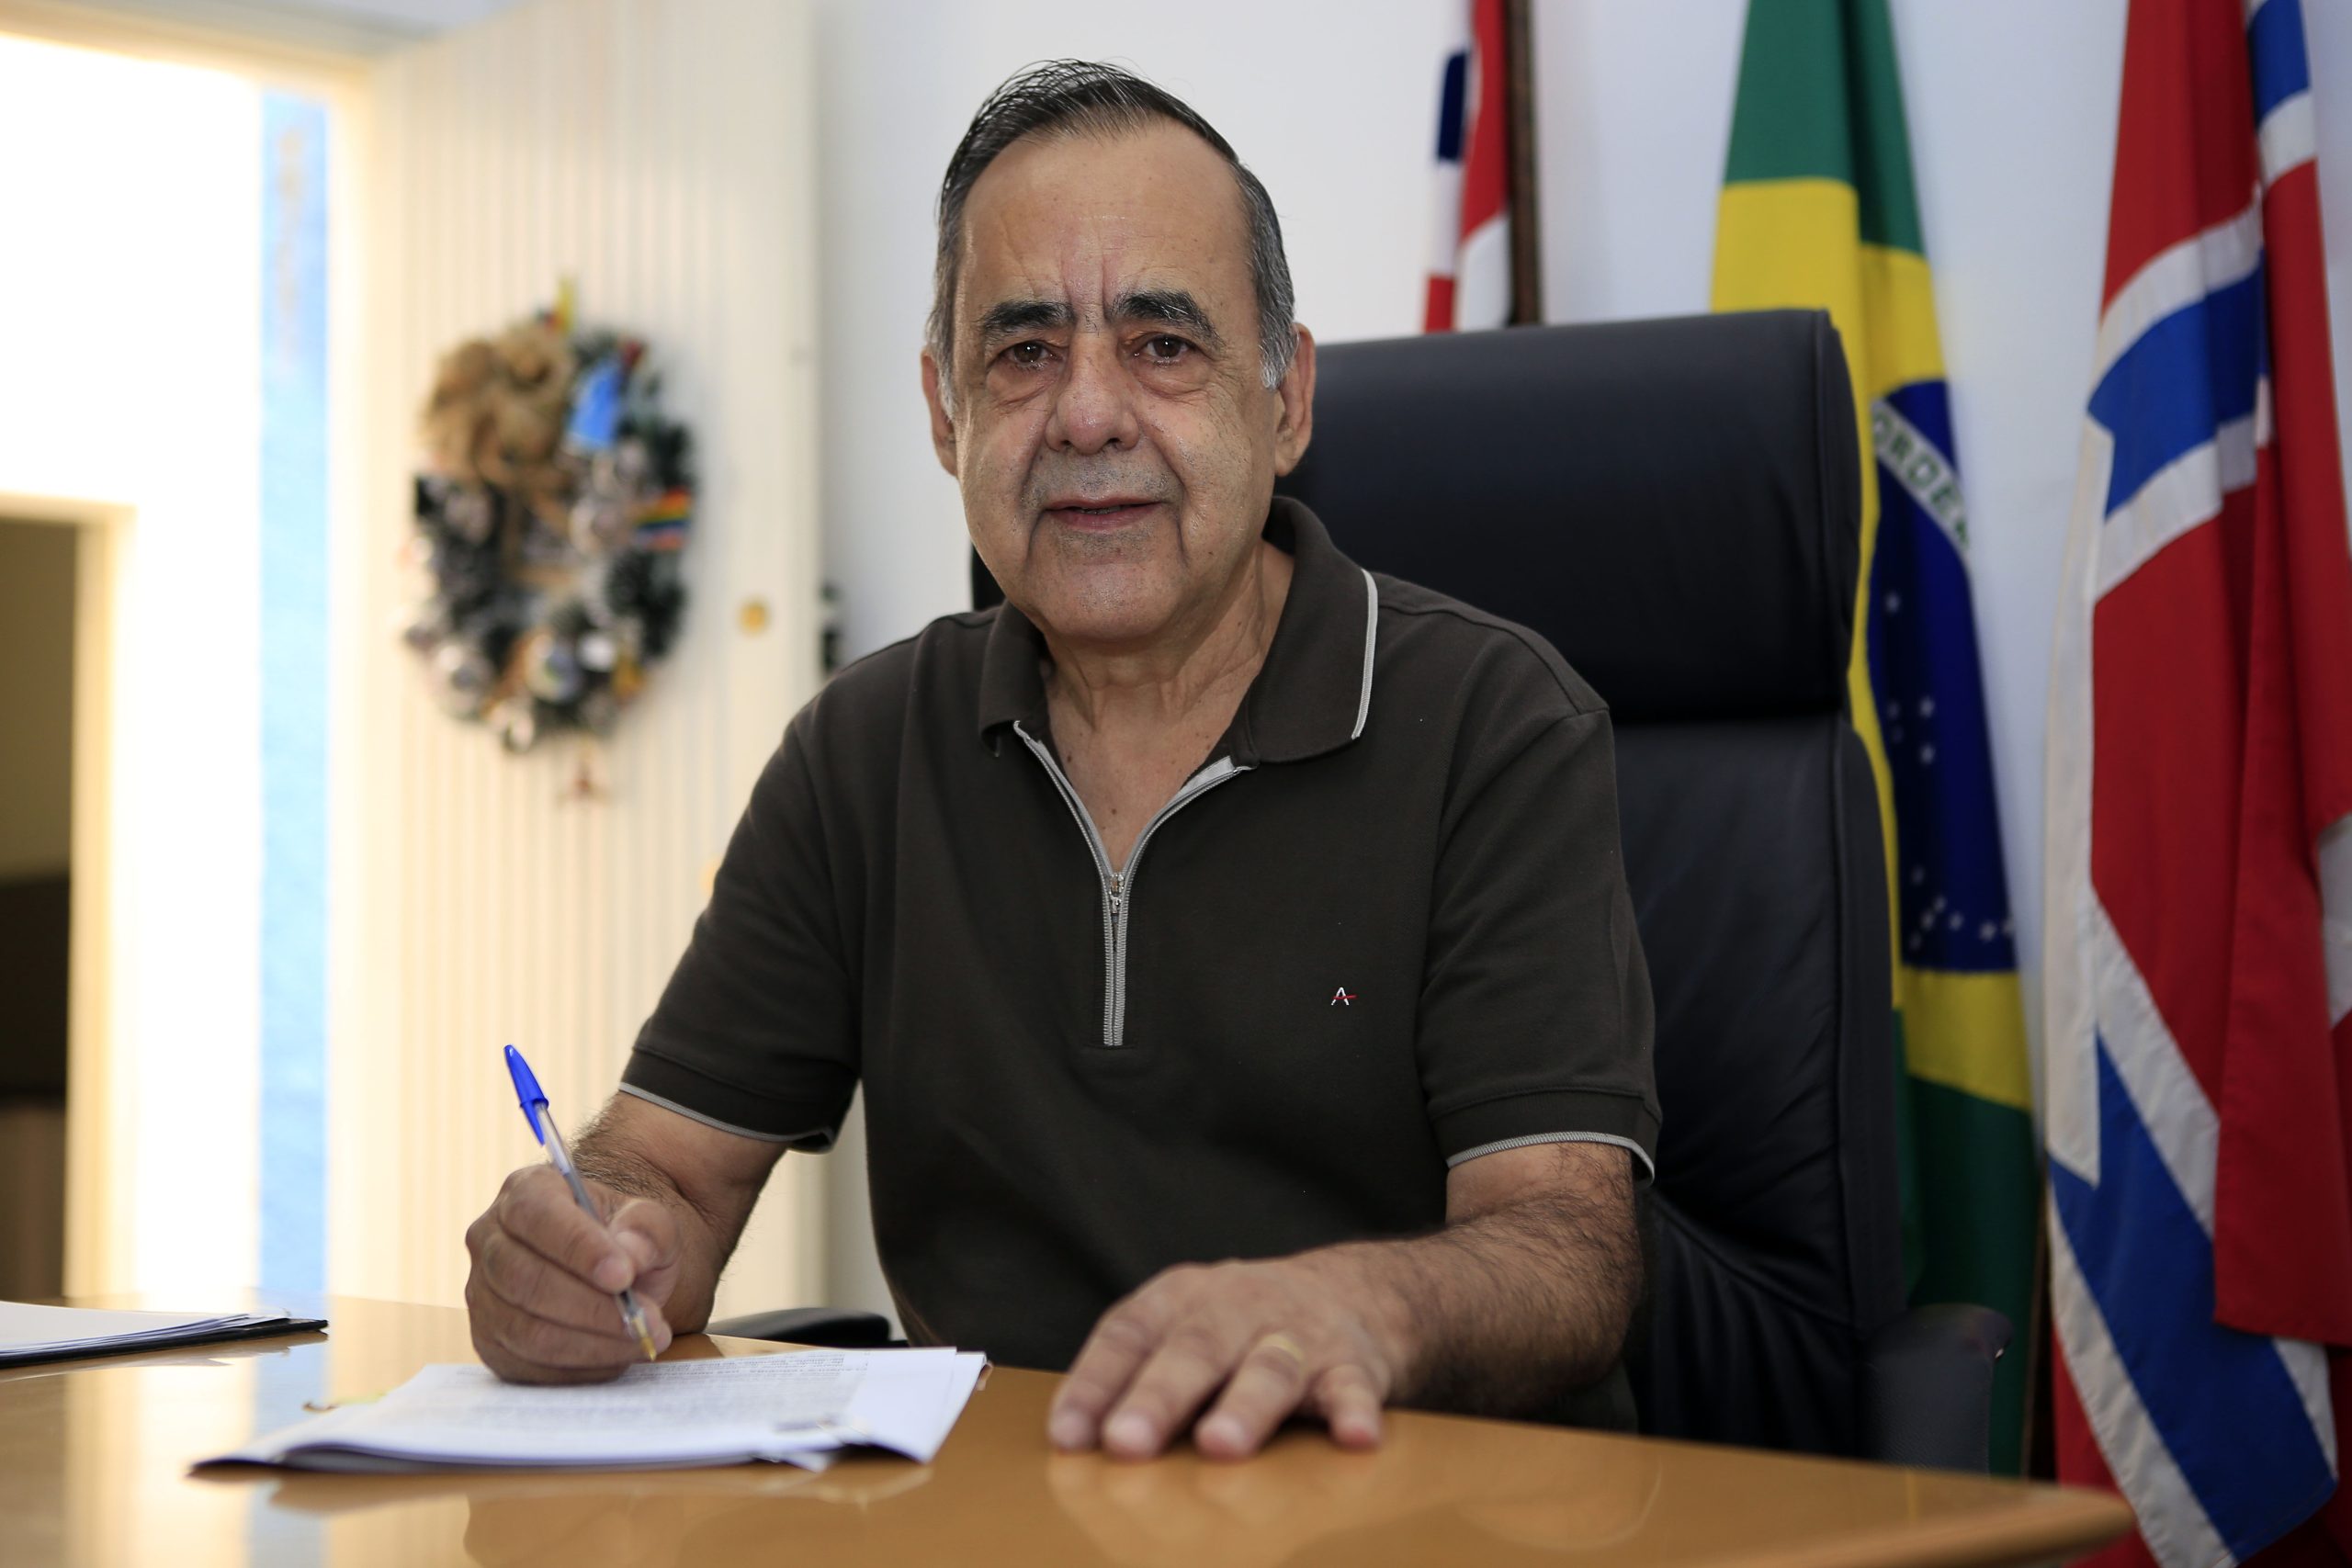 Delegado, prefeito e apaixonado por Franco da Rocha. Dr. Nivaldo fala de sua trajetória na política